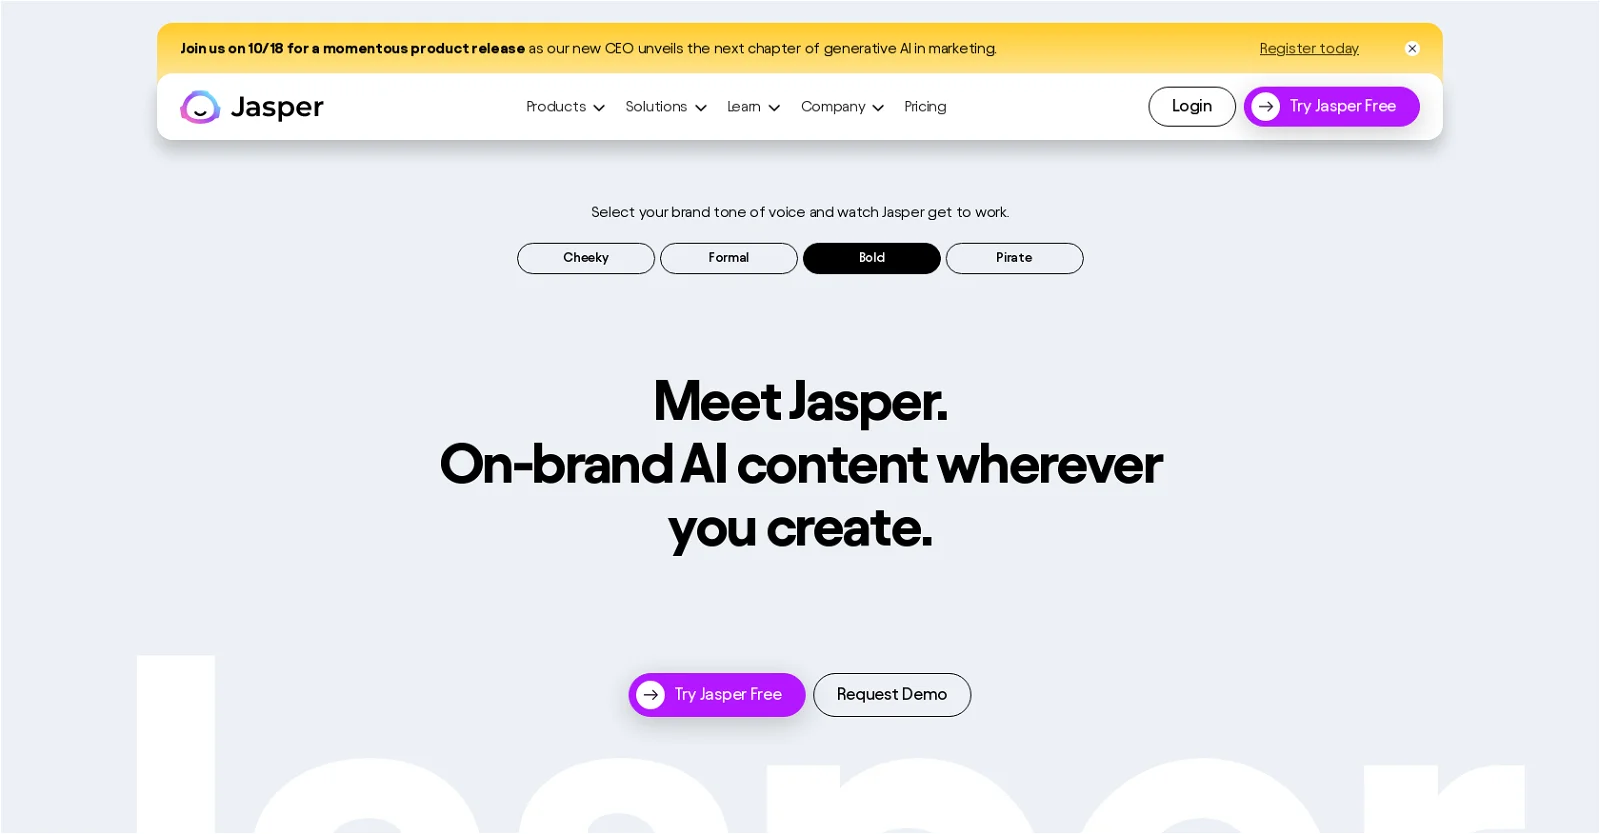 Jasper.ai website